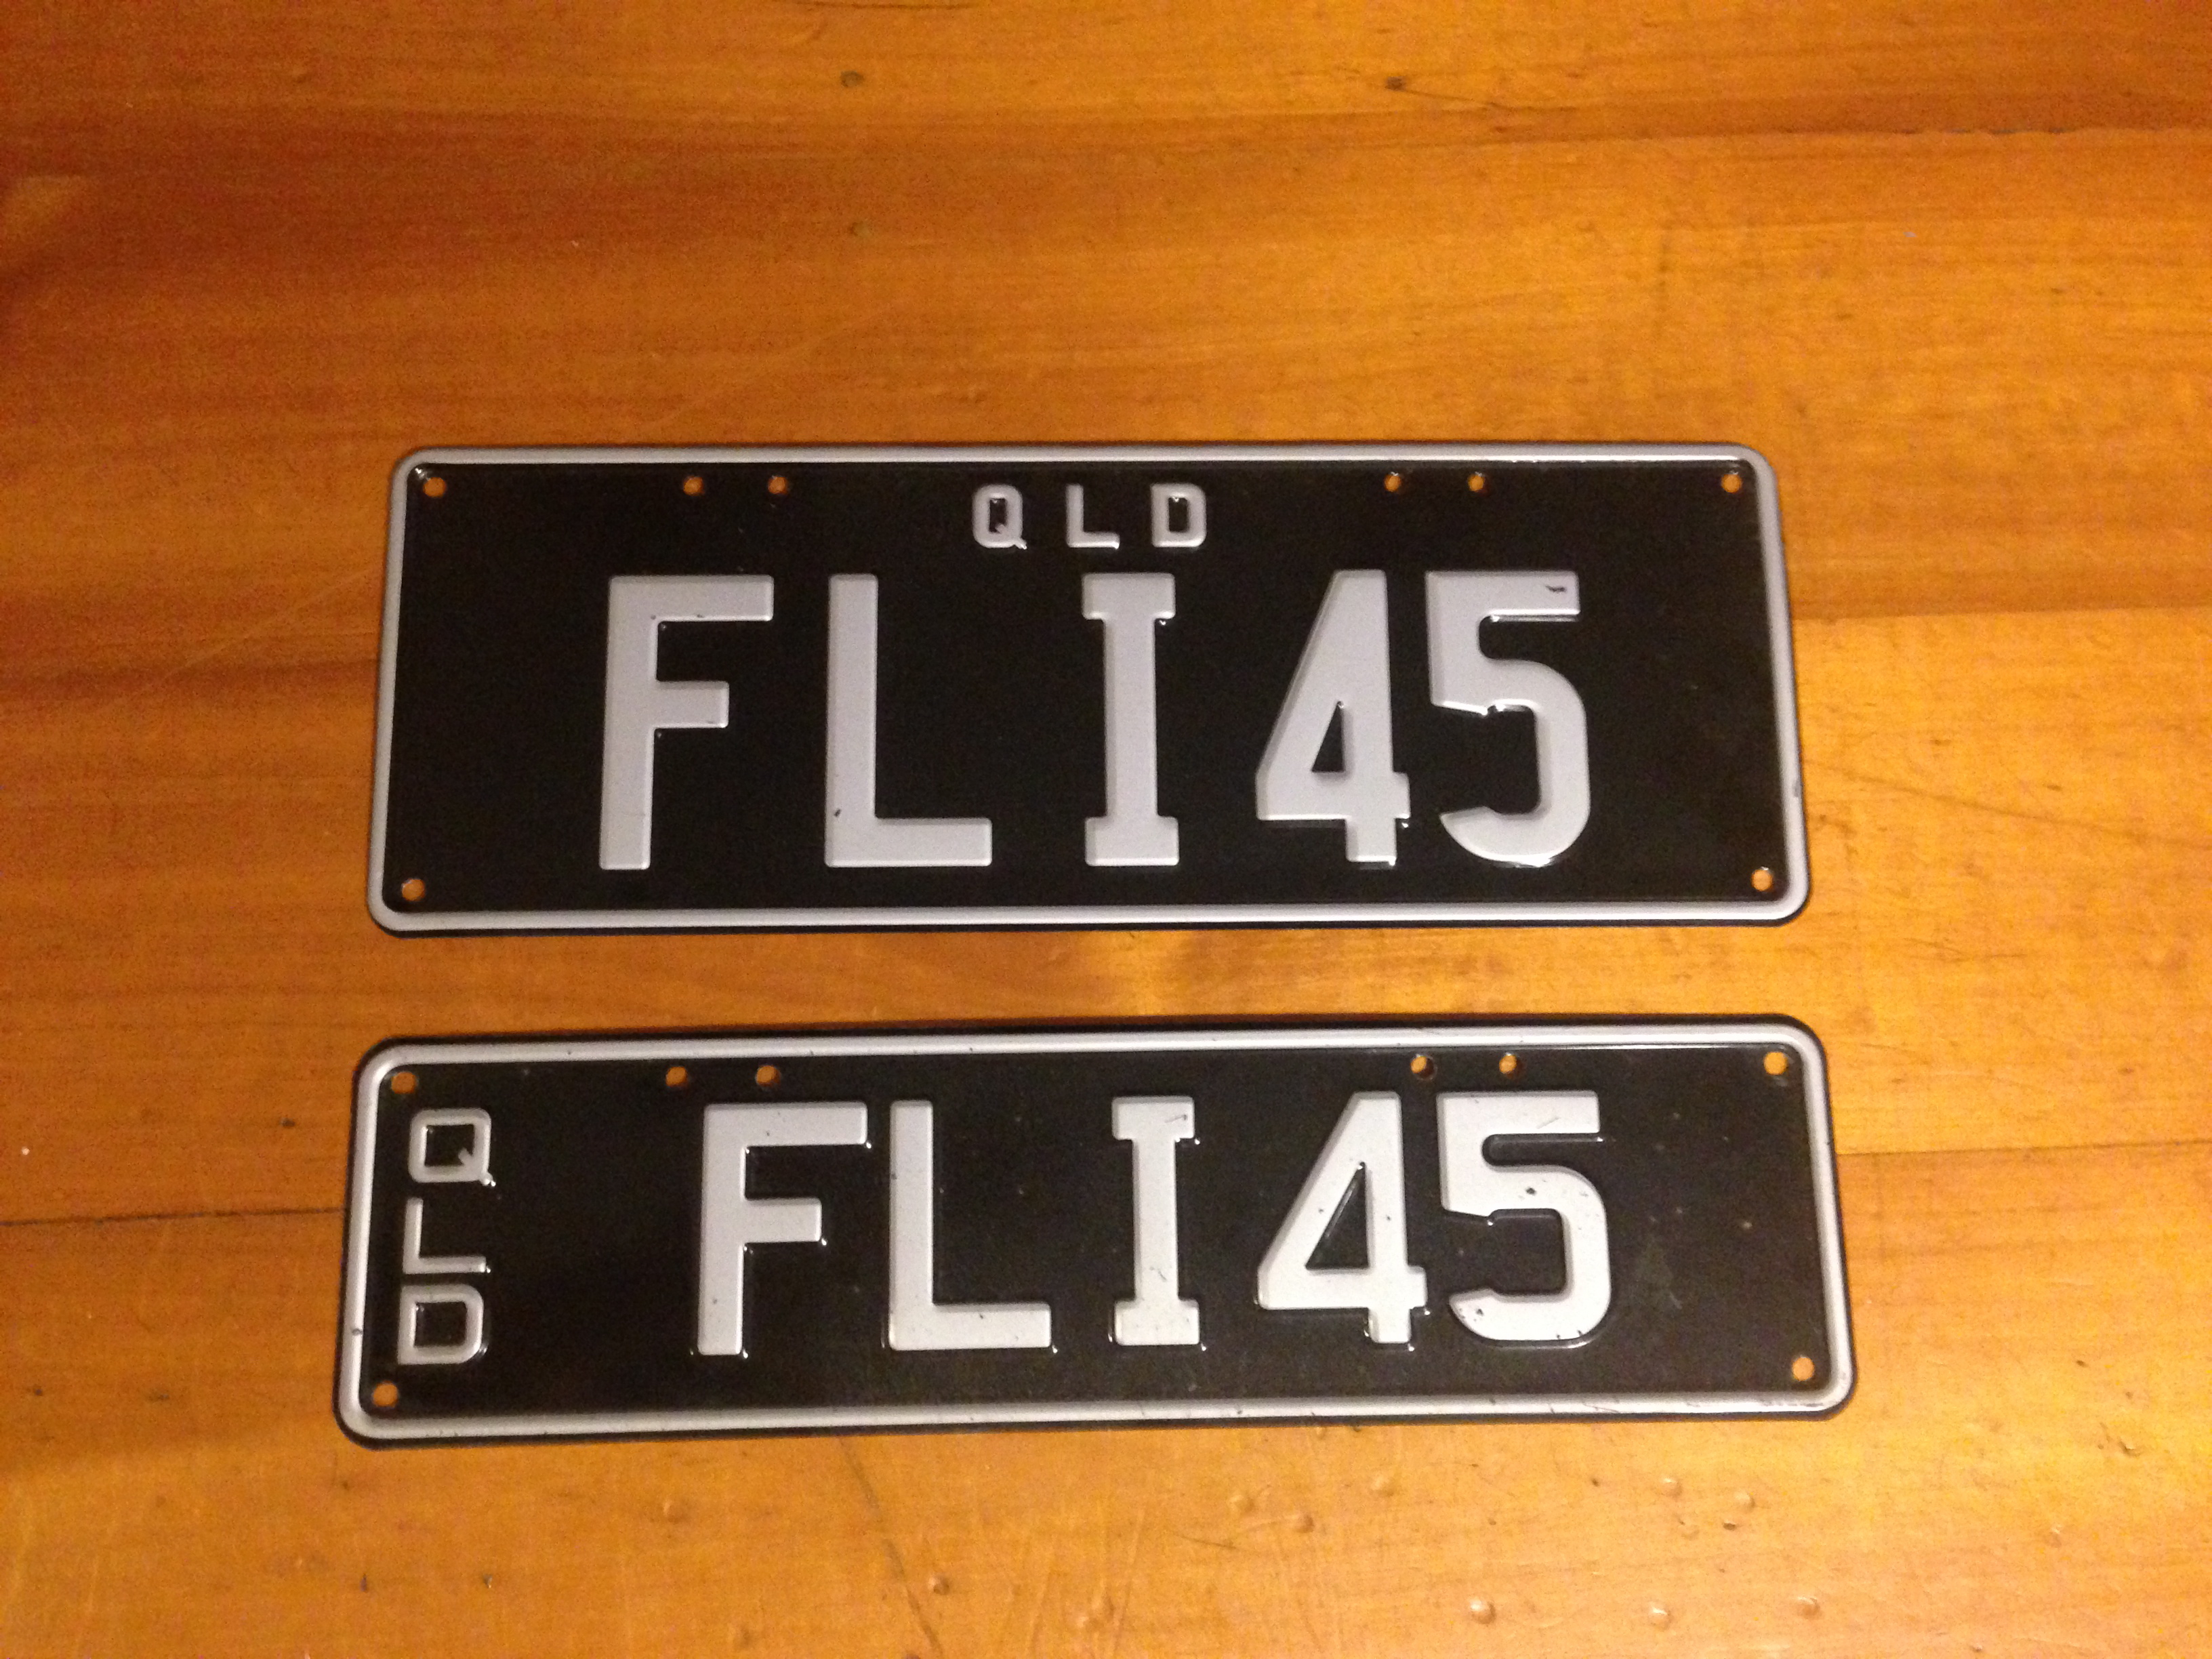 Standard Plates - FLI45